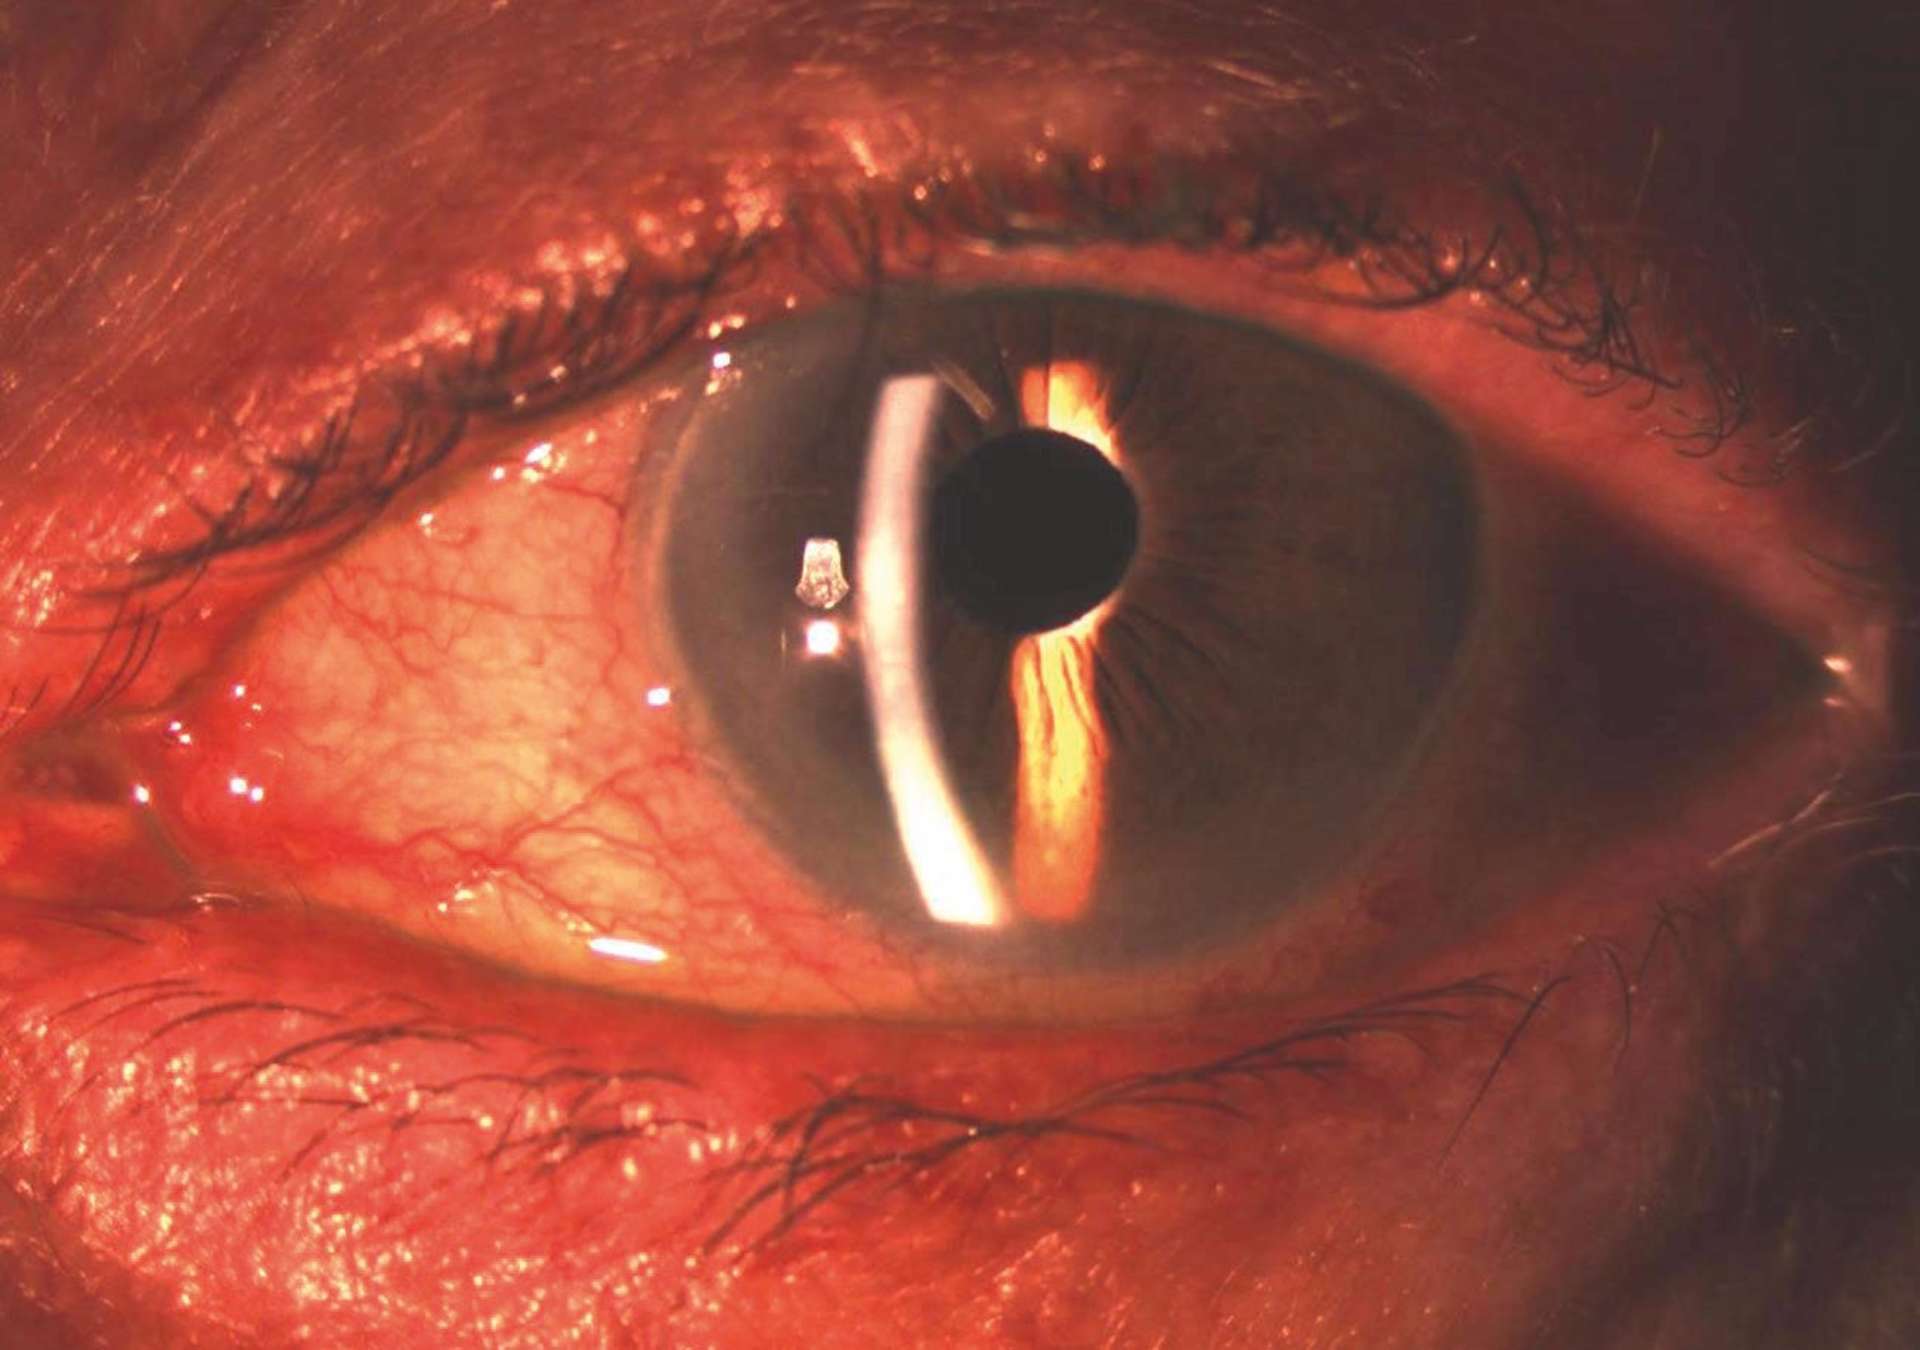 Inflammation de la surface oculaire chez une patiente glaucomateuse sous trithérapie hypotonisante
